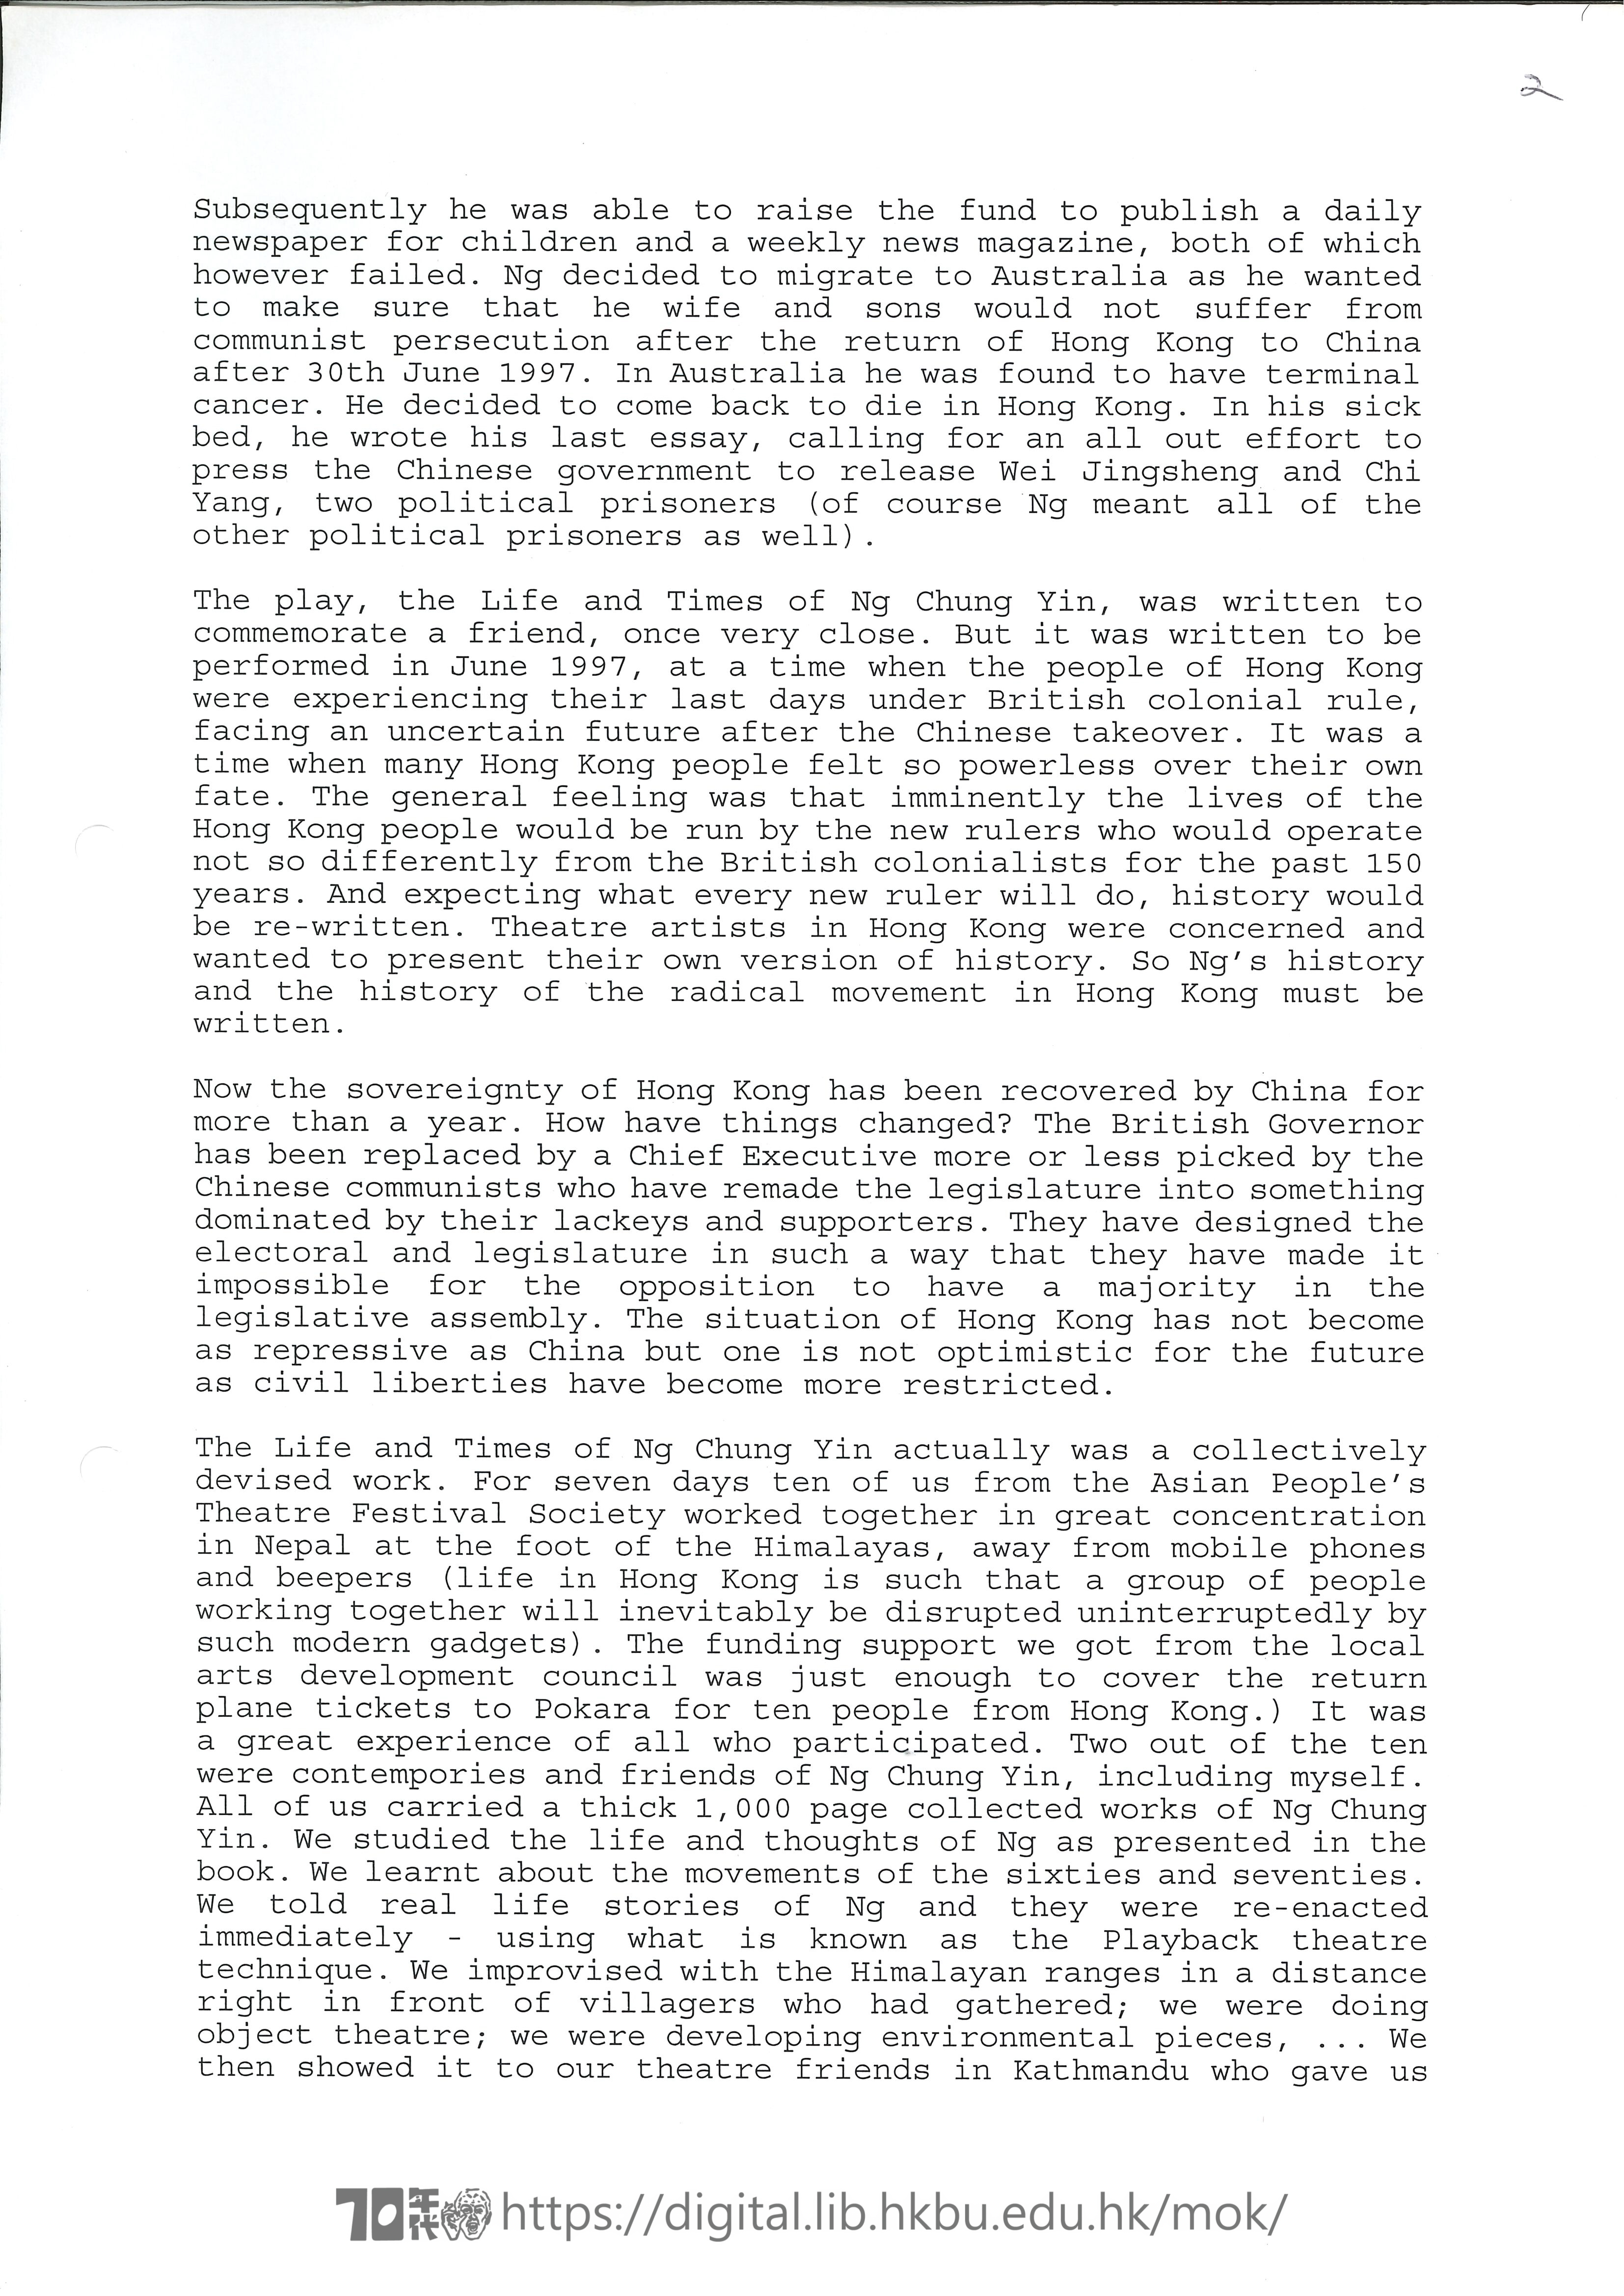 The Story of Ng Chung Yin  Fax from Mok Chiu Yu to Joanna Chan MOK, Chiu Yu 